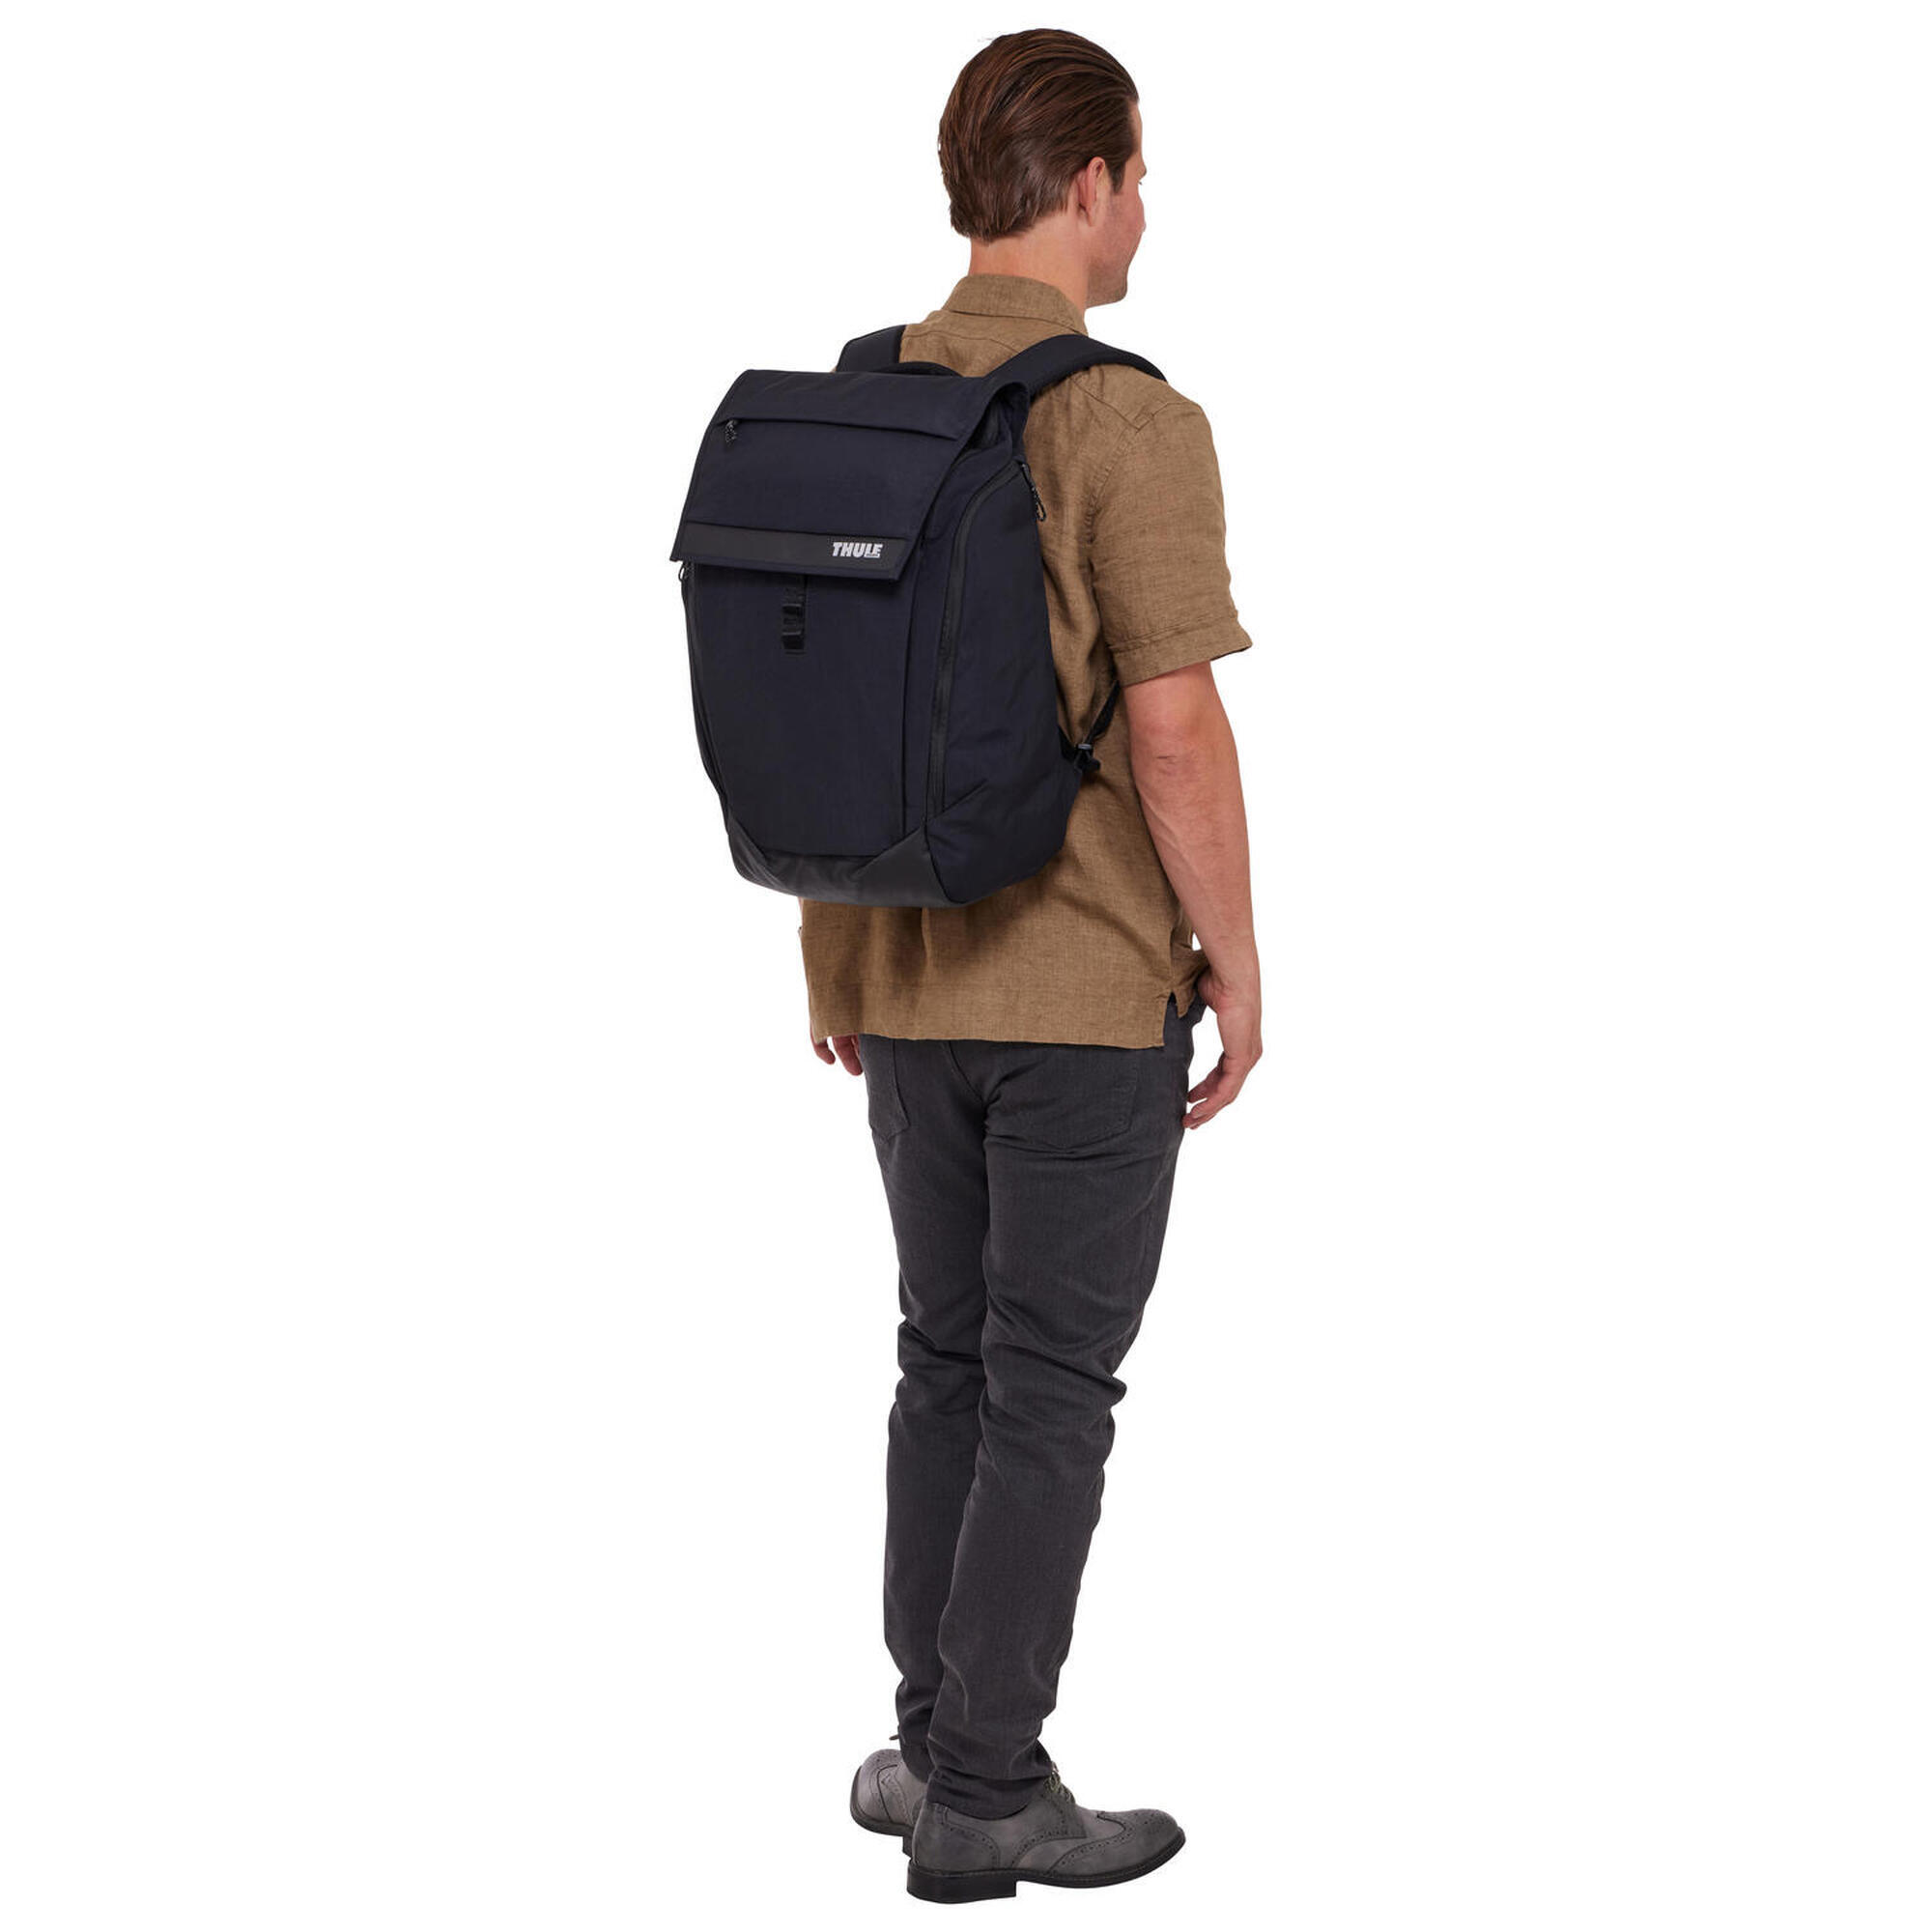 Paramount laptop backpack 27L - Drak Green